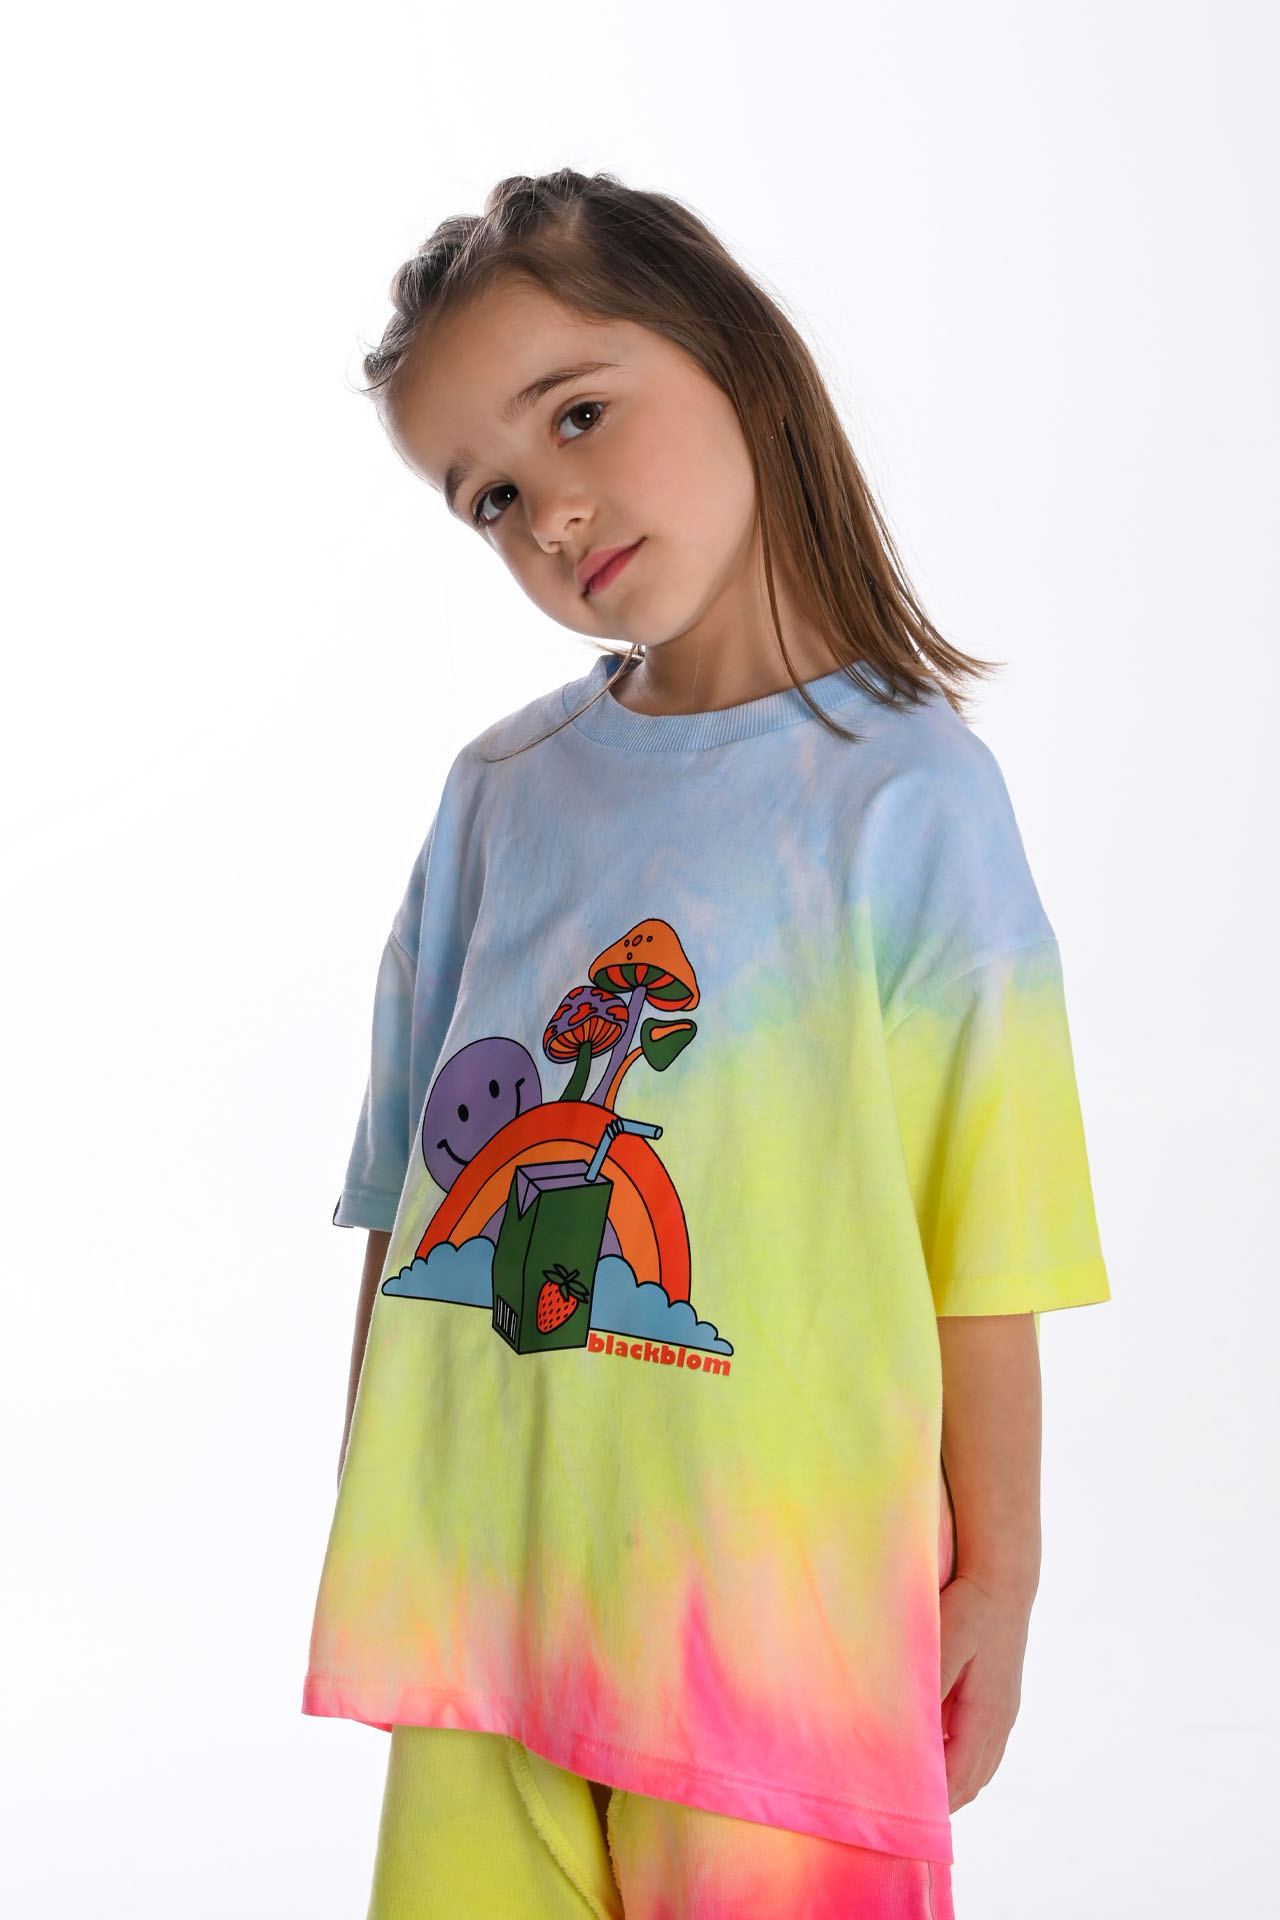 Blackblom Kids Unisex T-shirt Tie Dye